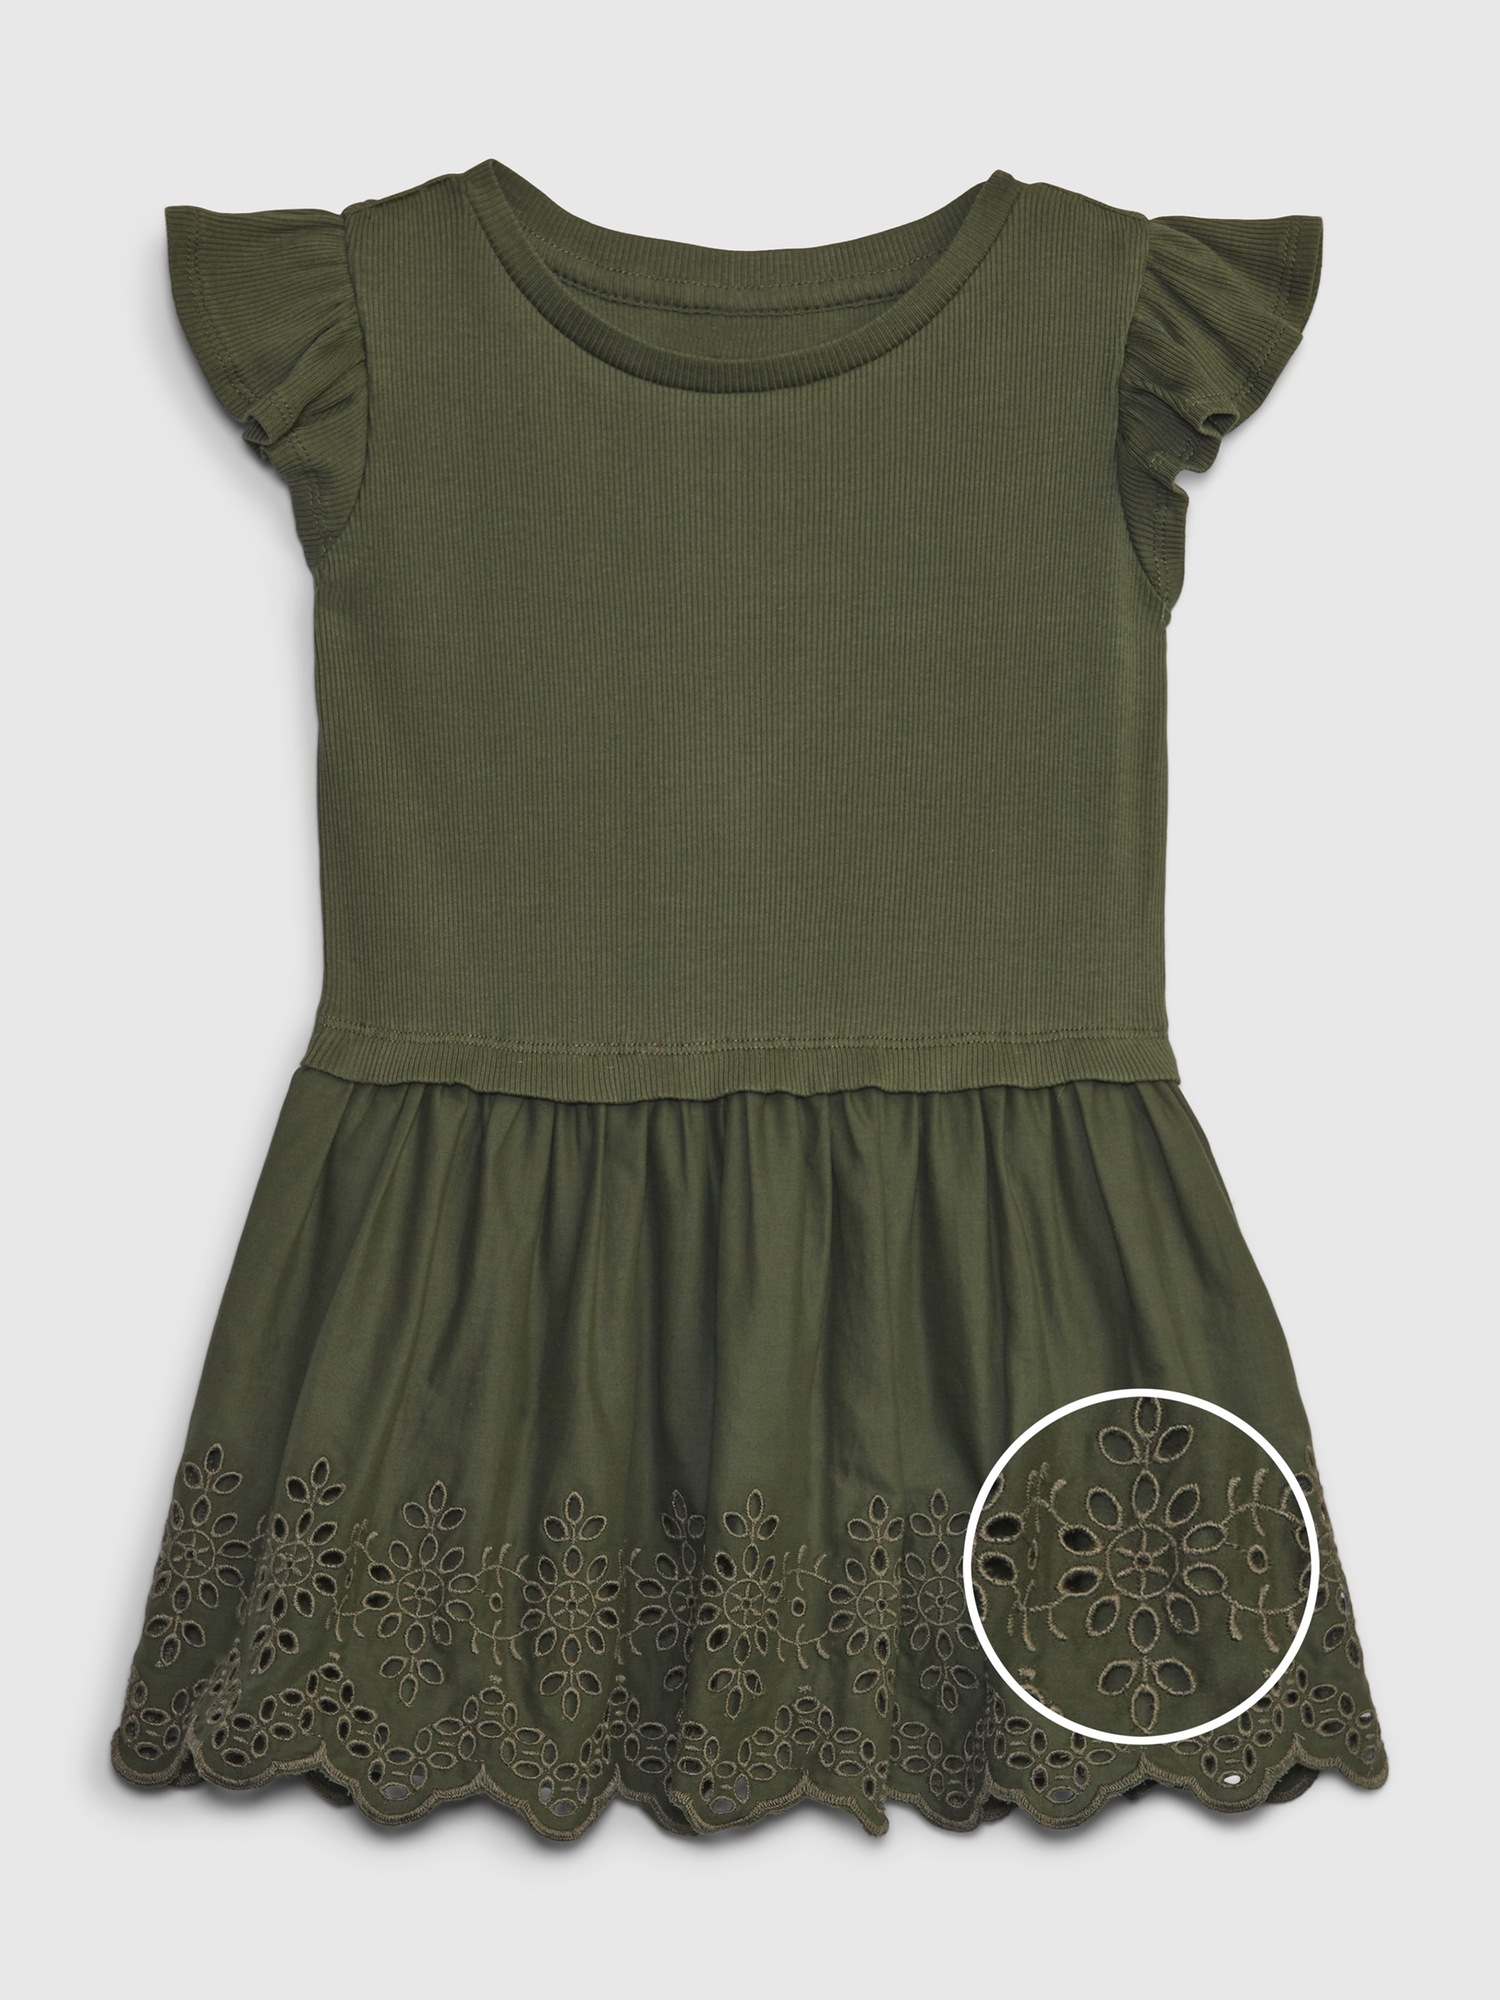 Gap Toddler Eyelet Dress green. 1